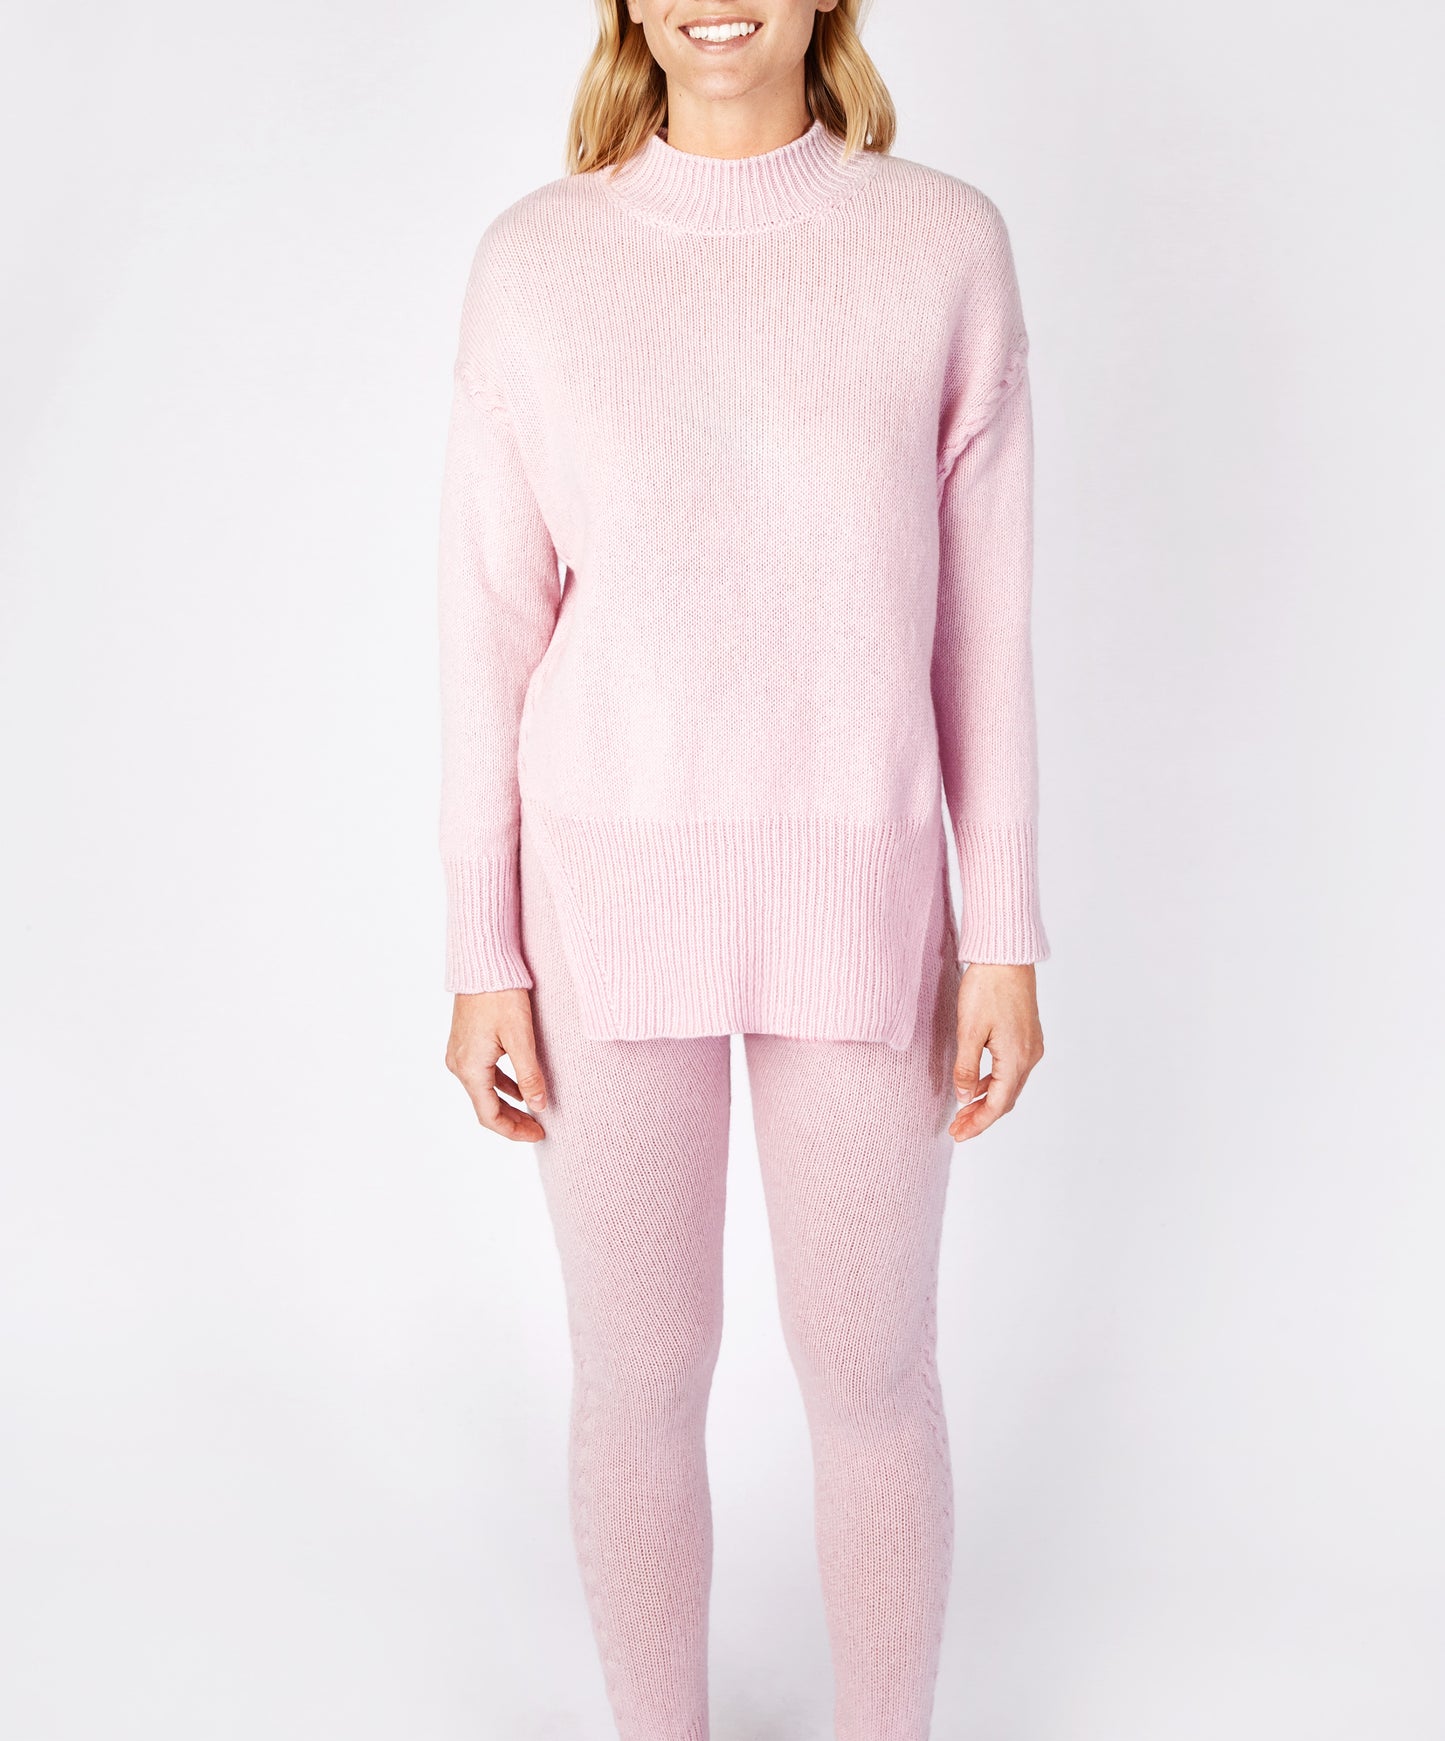 IrelandsEye Knitwear Funnel Neck Jersey Sweater Blush